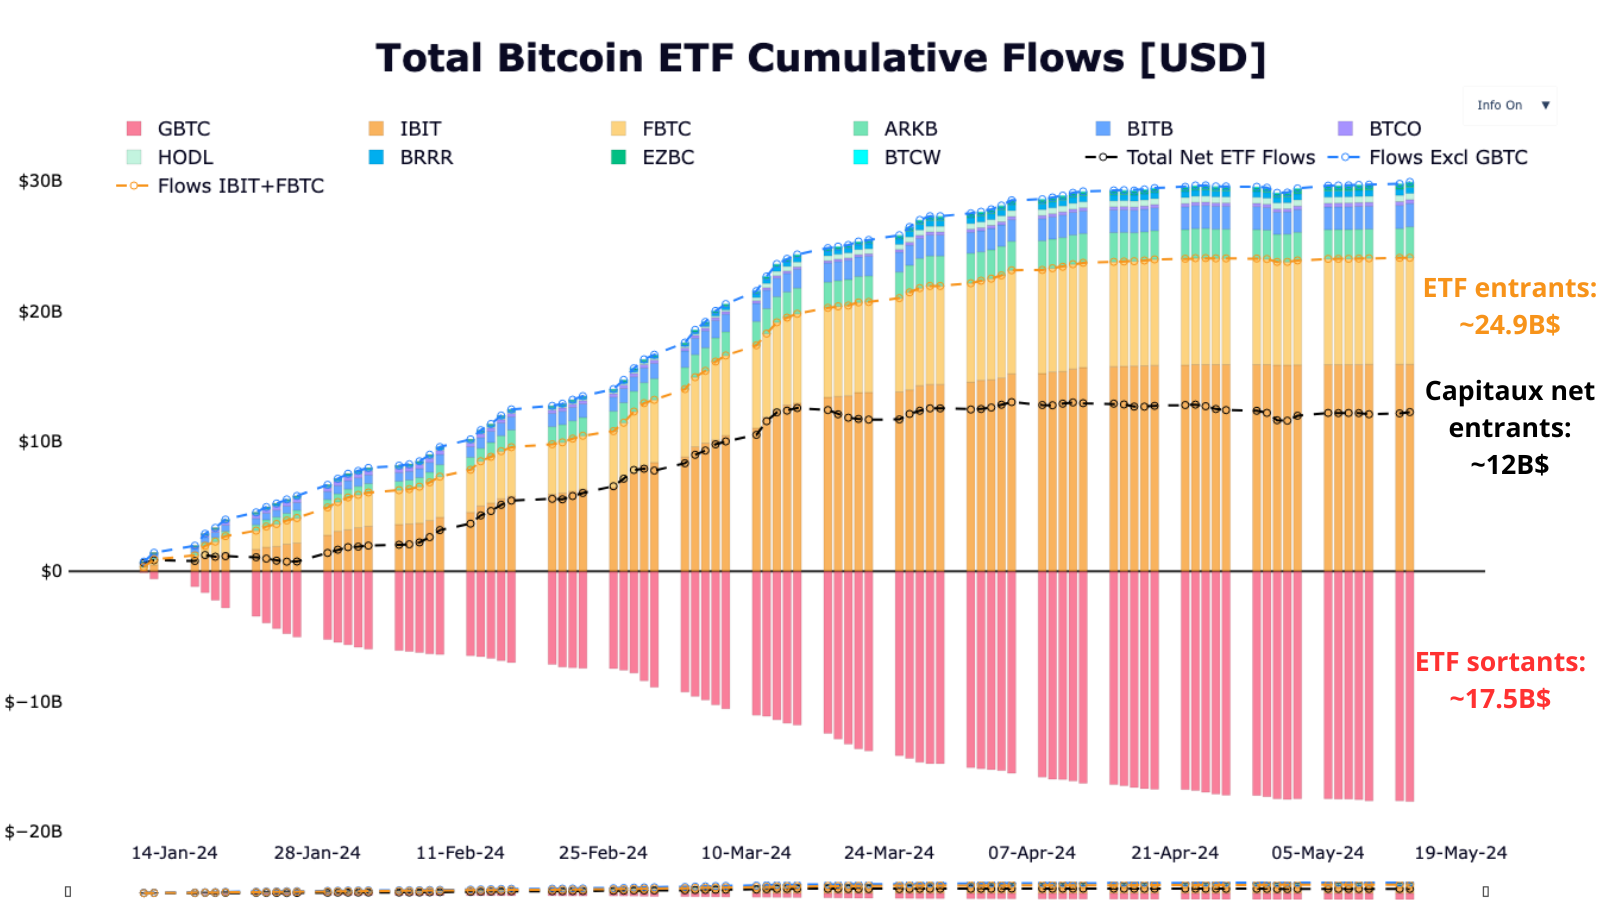 Représentation des flux de capitaux entrants et sortants de la part des ETF, incluant GBTC. On remarque que l'ensemble représente 25 milliards.